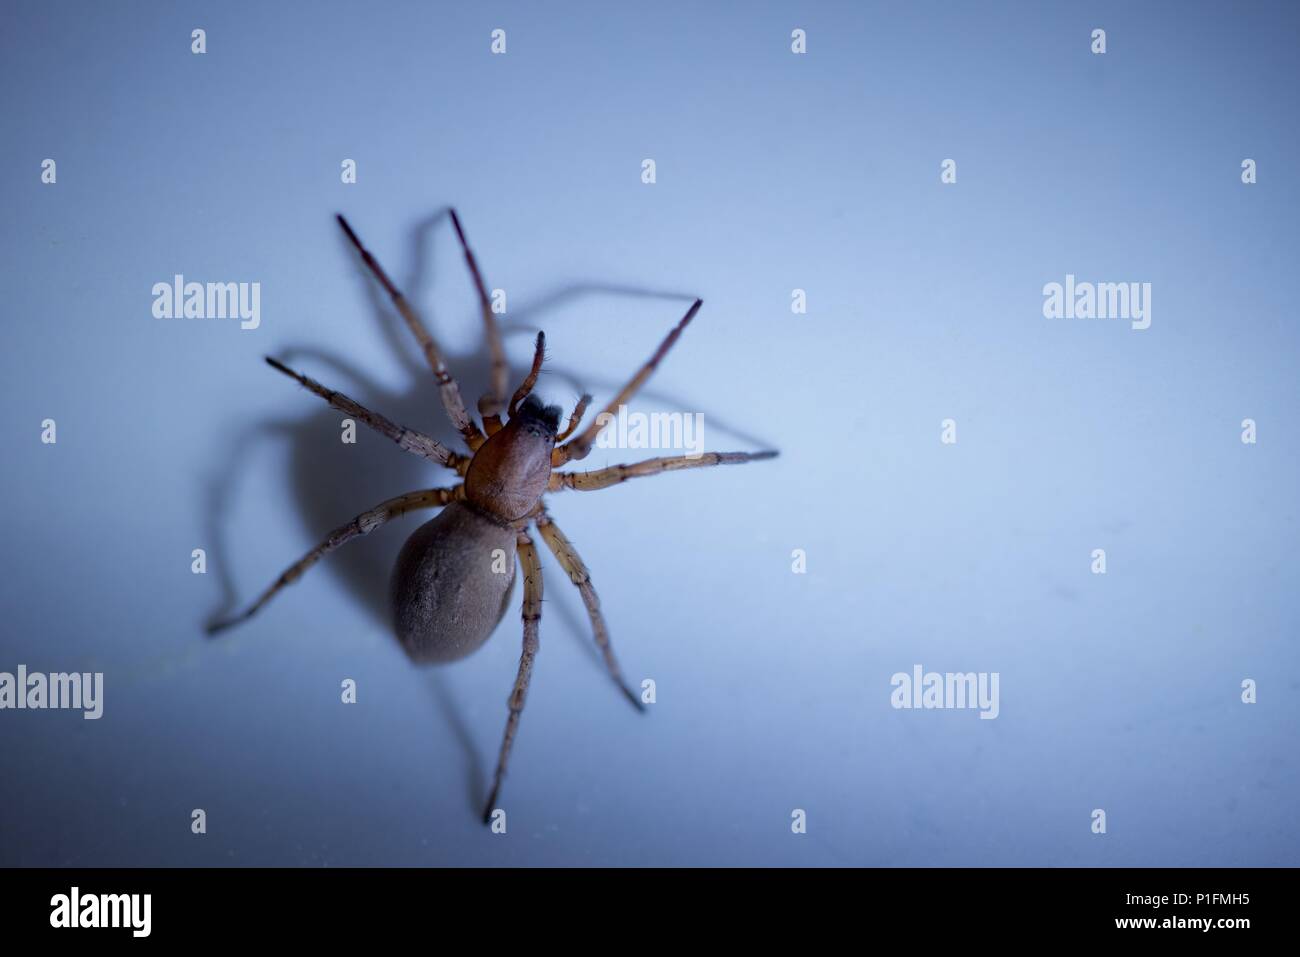 Sac spider (Clubionidae): Eine einzige Spinne in die weiße Keramik Waschbecken beschränkt Stockfoto